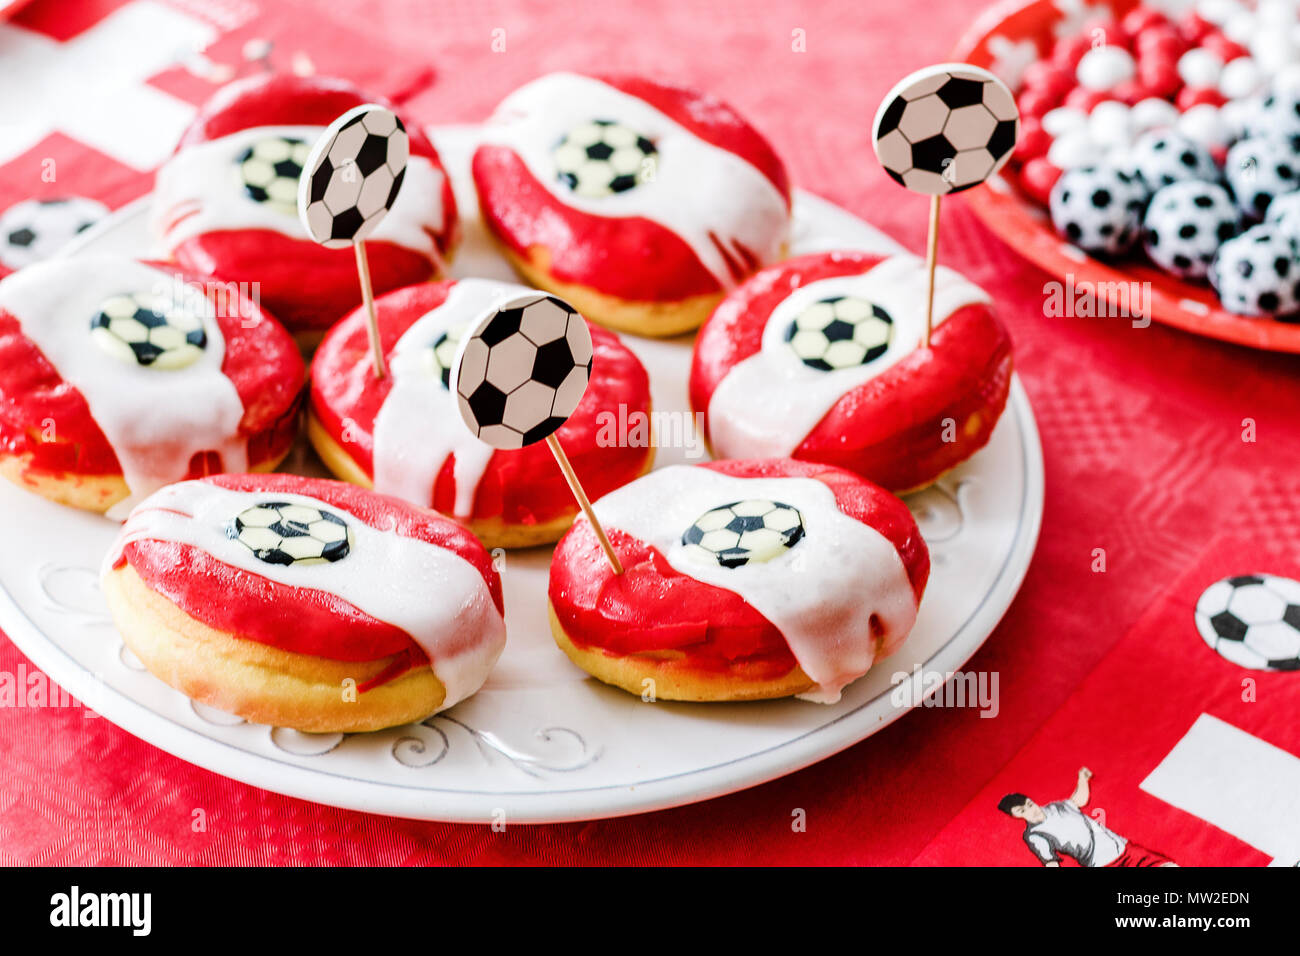 Donuts und Schokolade Süßigkeiten wie kleine Fußbälle auf rotem Tuch  geprägt. Fußball-Party zu Hause. Schweizer Flagge, Fußball Fieber in der  Schweiz Stockfotografie - Alamy